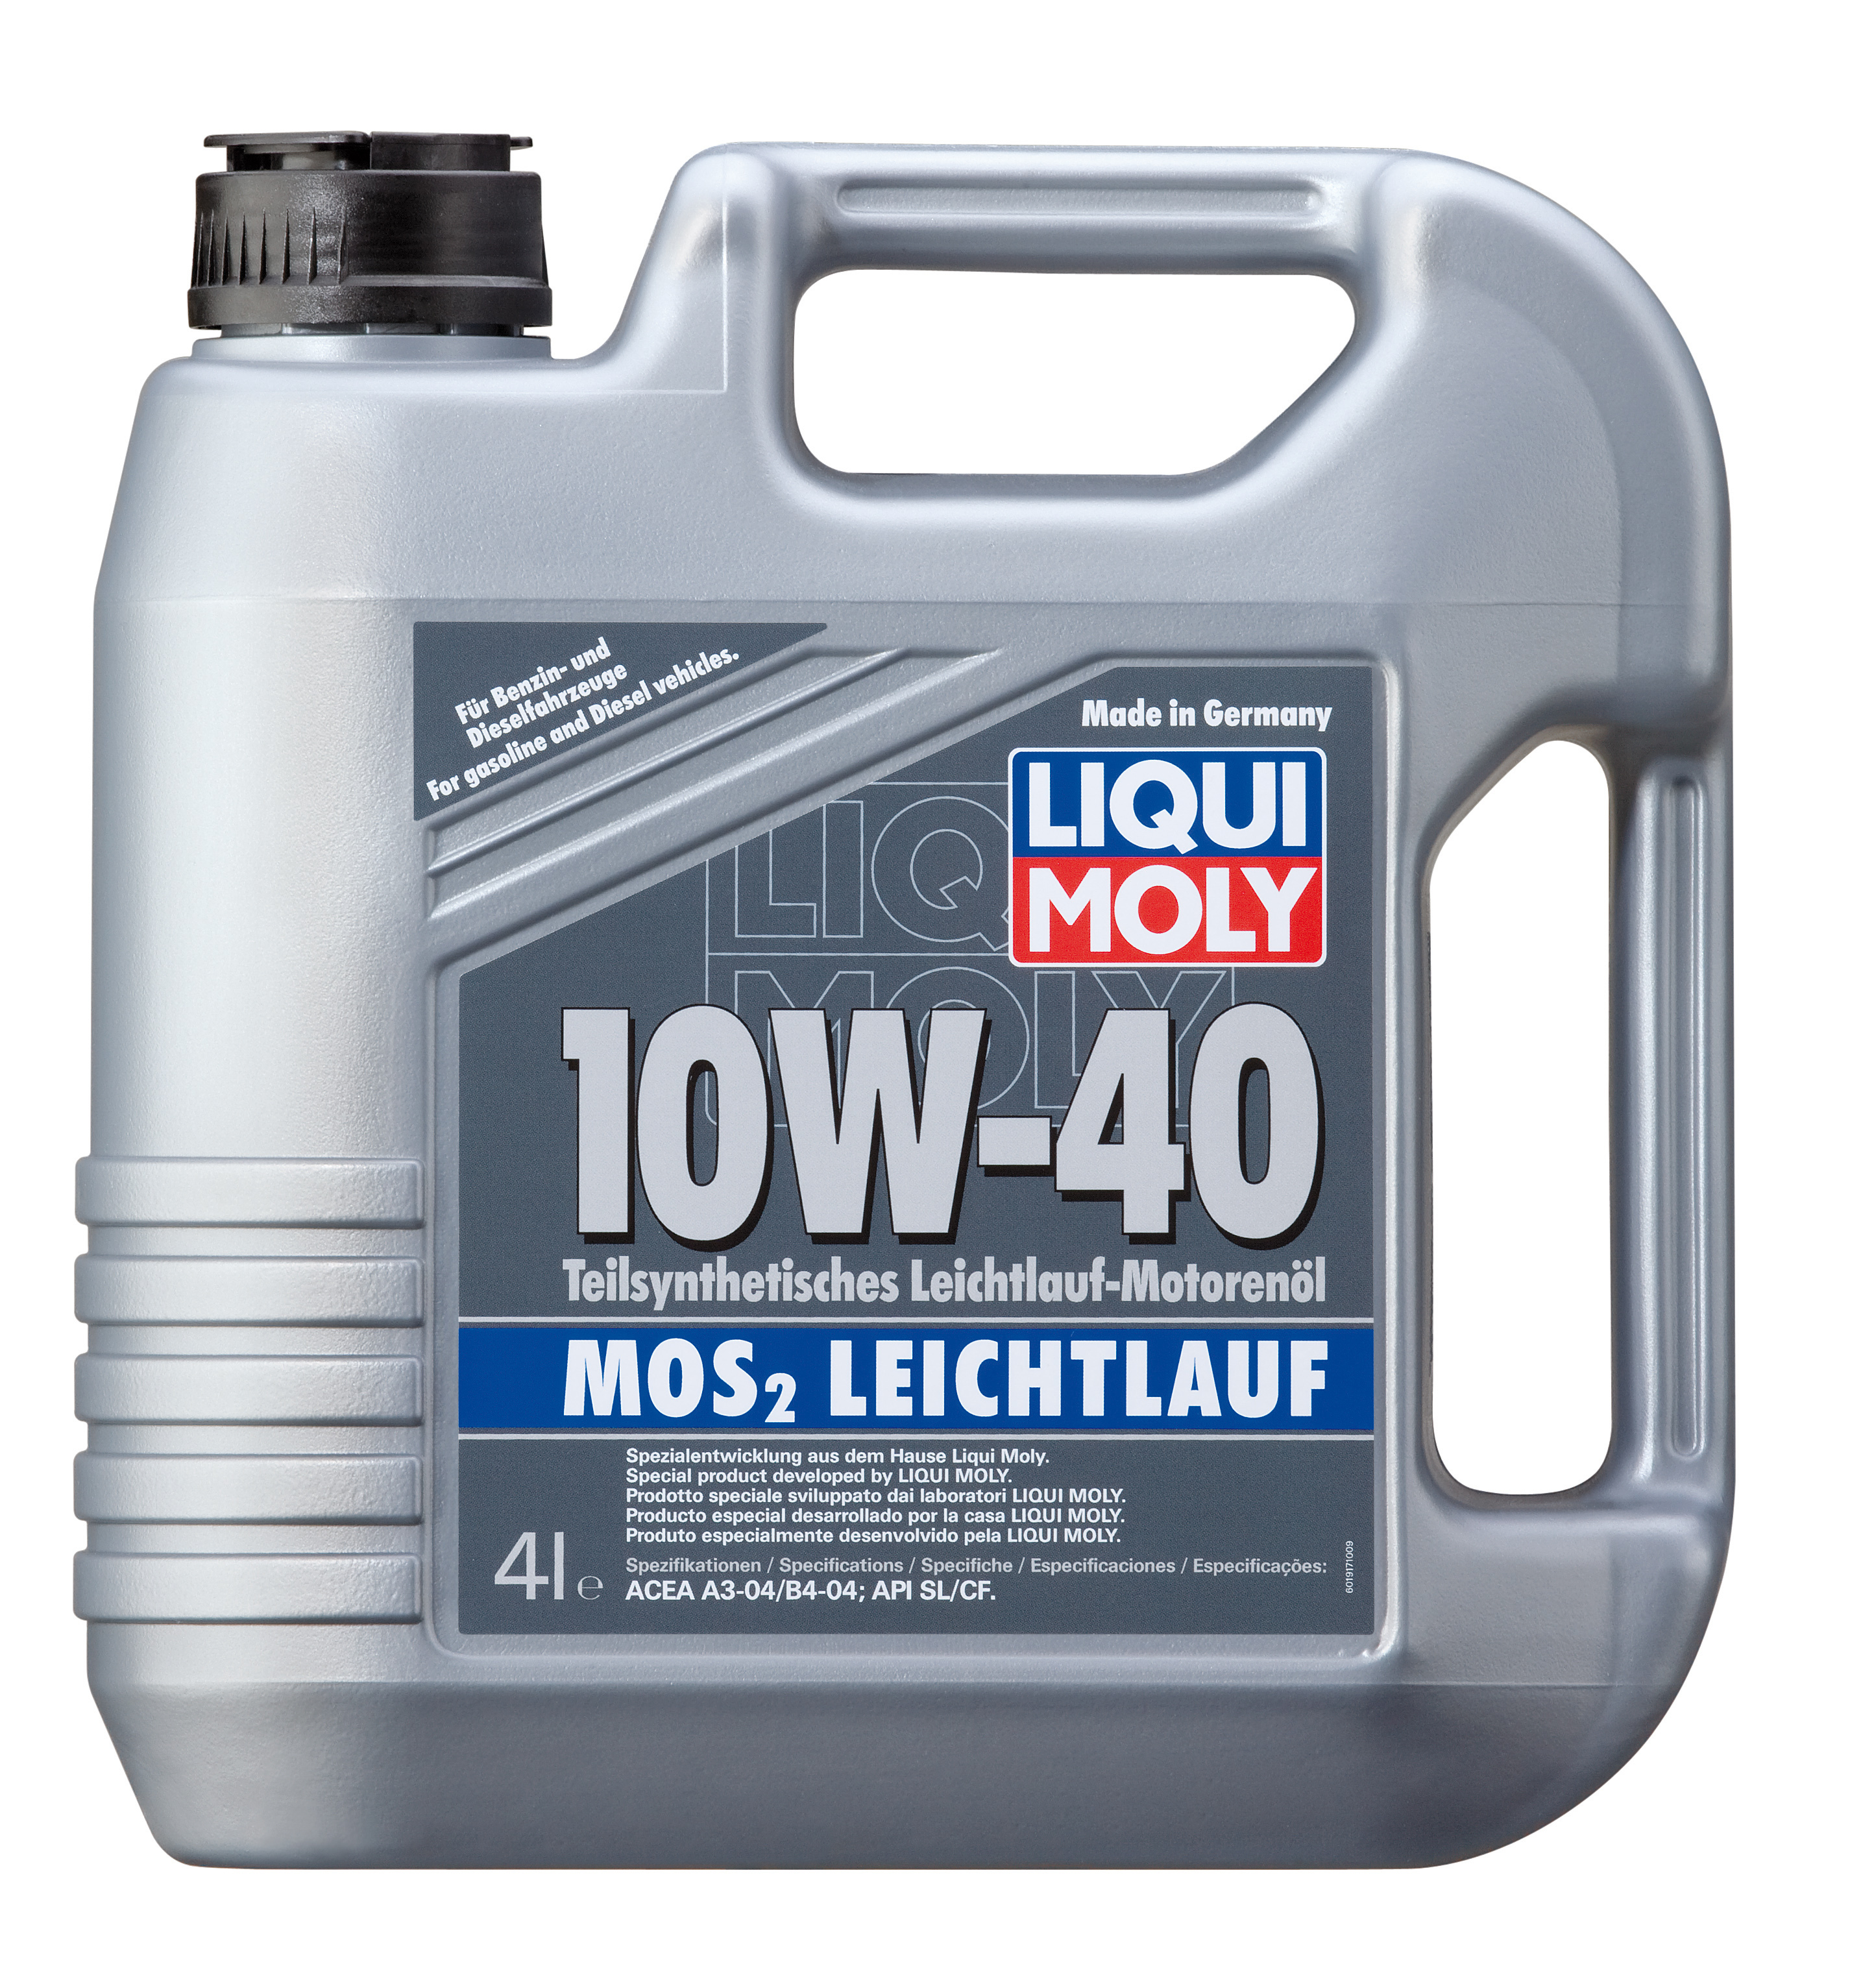 Сайт масел ликви моли. Liqui Moly 15w40. Liqui Moly mos2. Масло Ликви моли 10w 40. Liqui Moly 10w 40 полусинтетика.